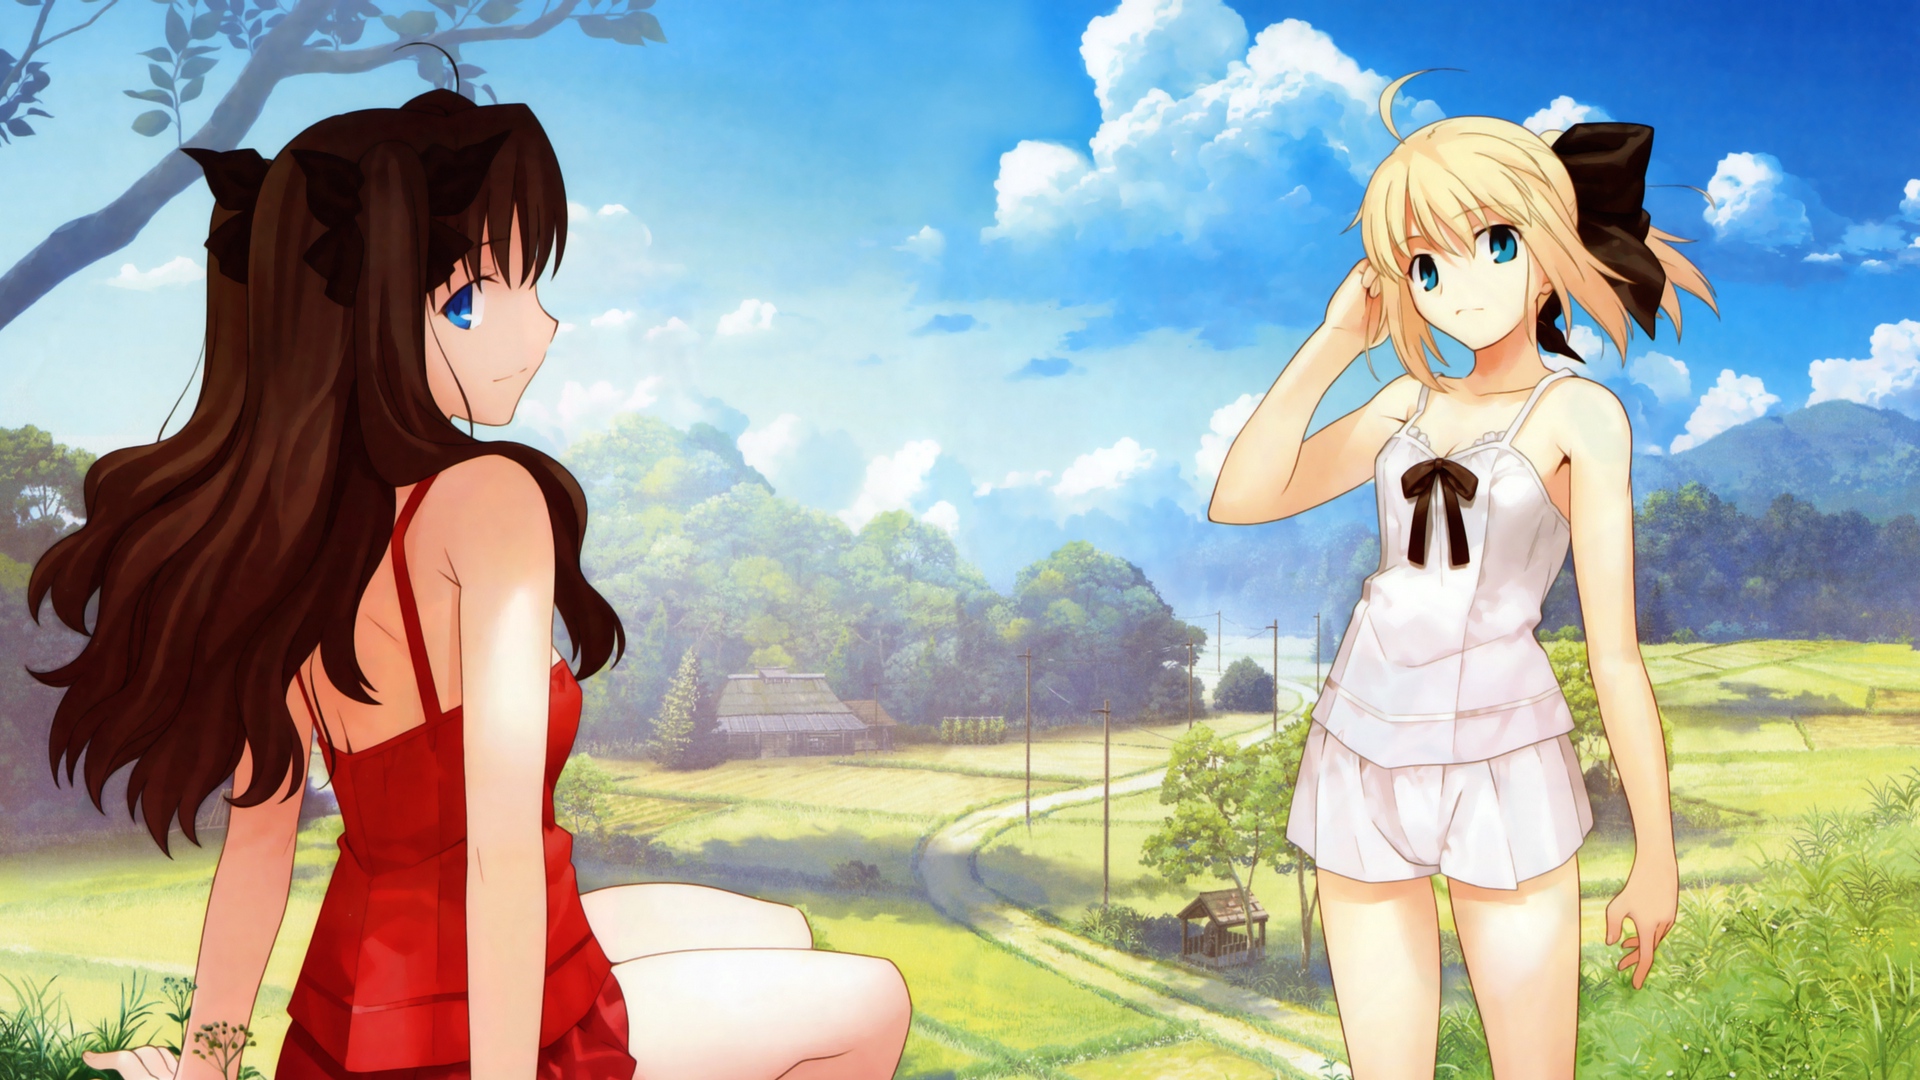 Wallpaper Anime, Girls, Summer, Sun, Grass, Leisure Tohsaka And Saber